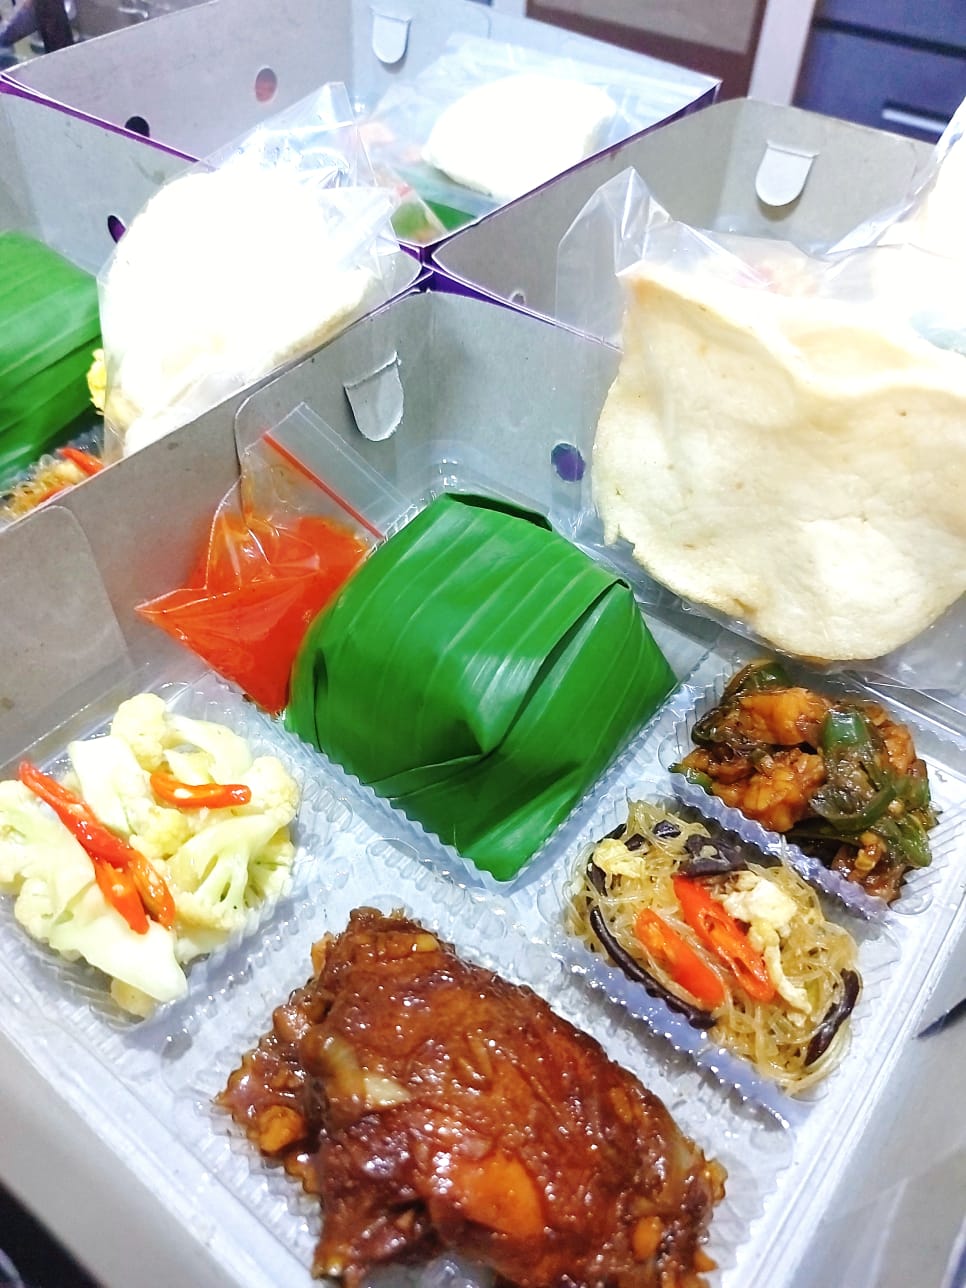 Paket Nasi Timbel Ayam Goreng Mentega - Tempe Cabe Hijau - Cah Kembang Kol - Pisang - Bihun Jamur Special - Sambal - Kerupuk - Puding - Aqua